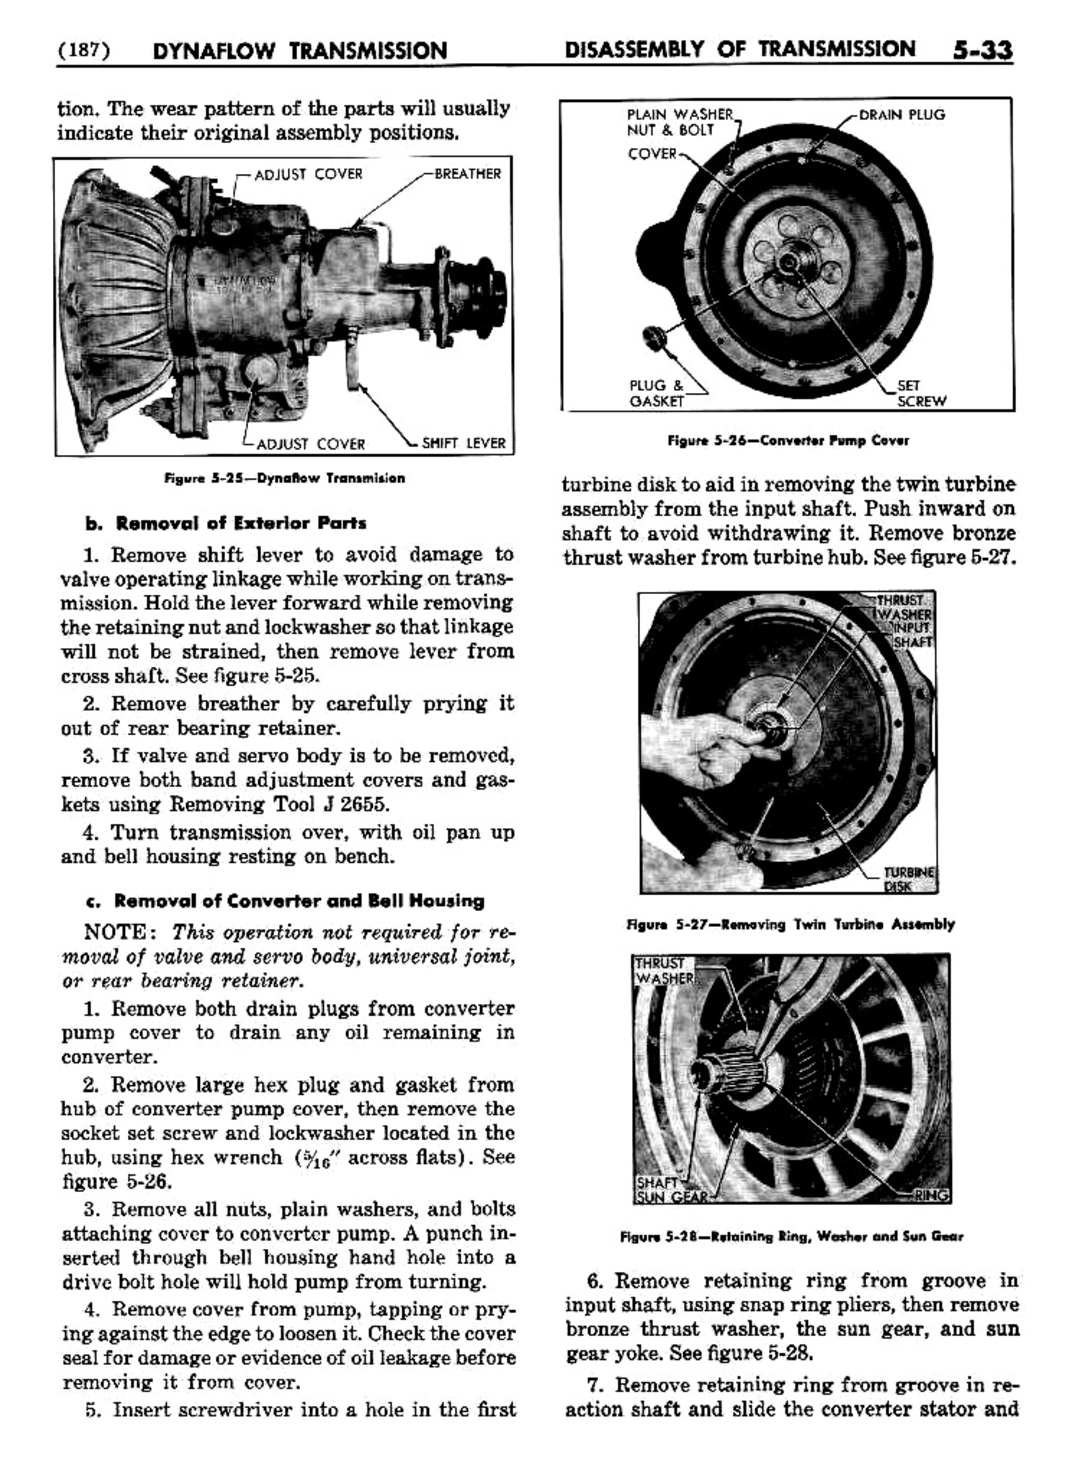 n_06 1954 Buick Shop Manual - Dynaflow-033-033.jpg